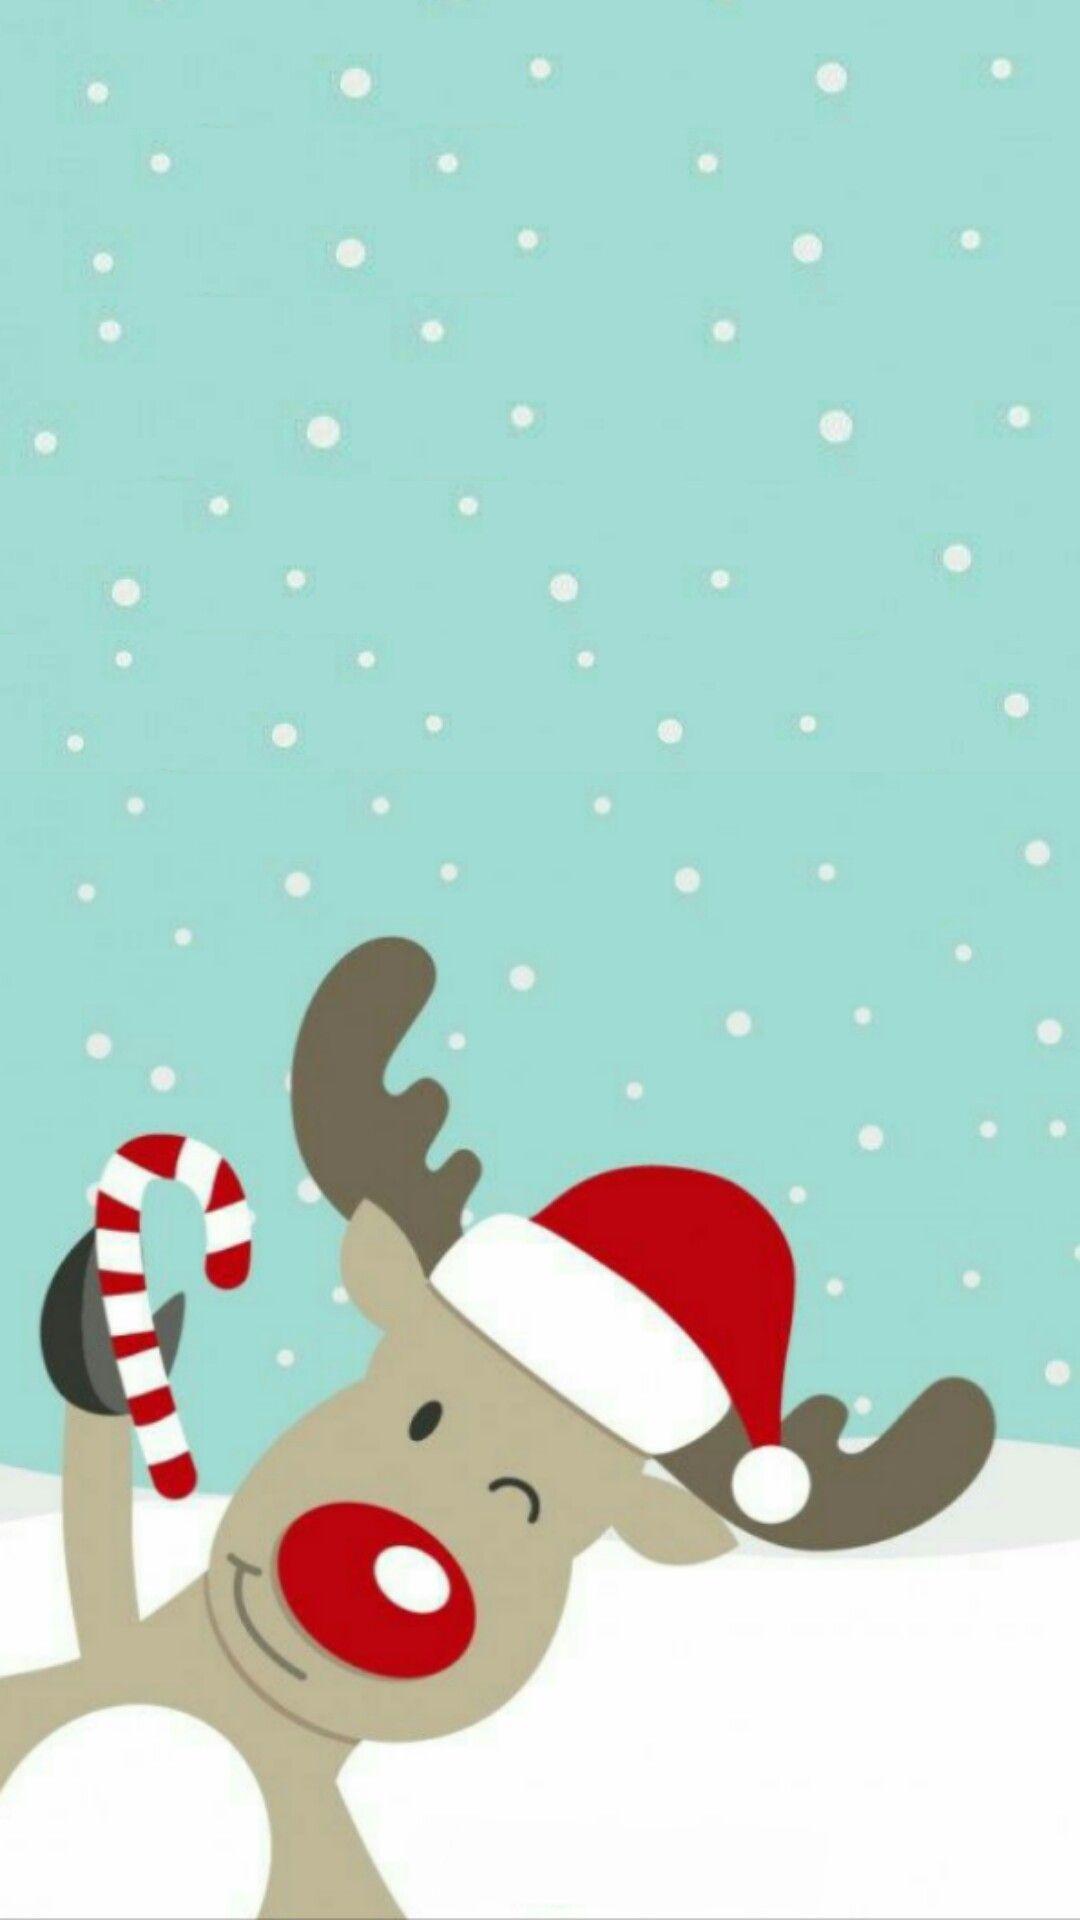 Christmas Reindeer Wallpaper Free Christmas Reindeer Background